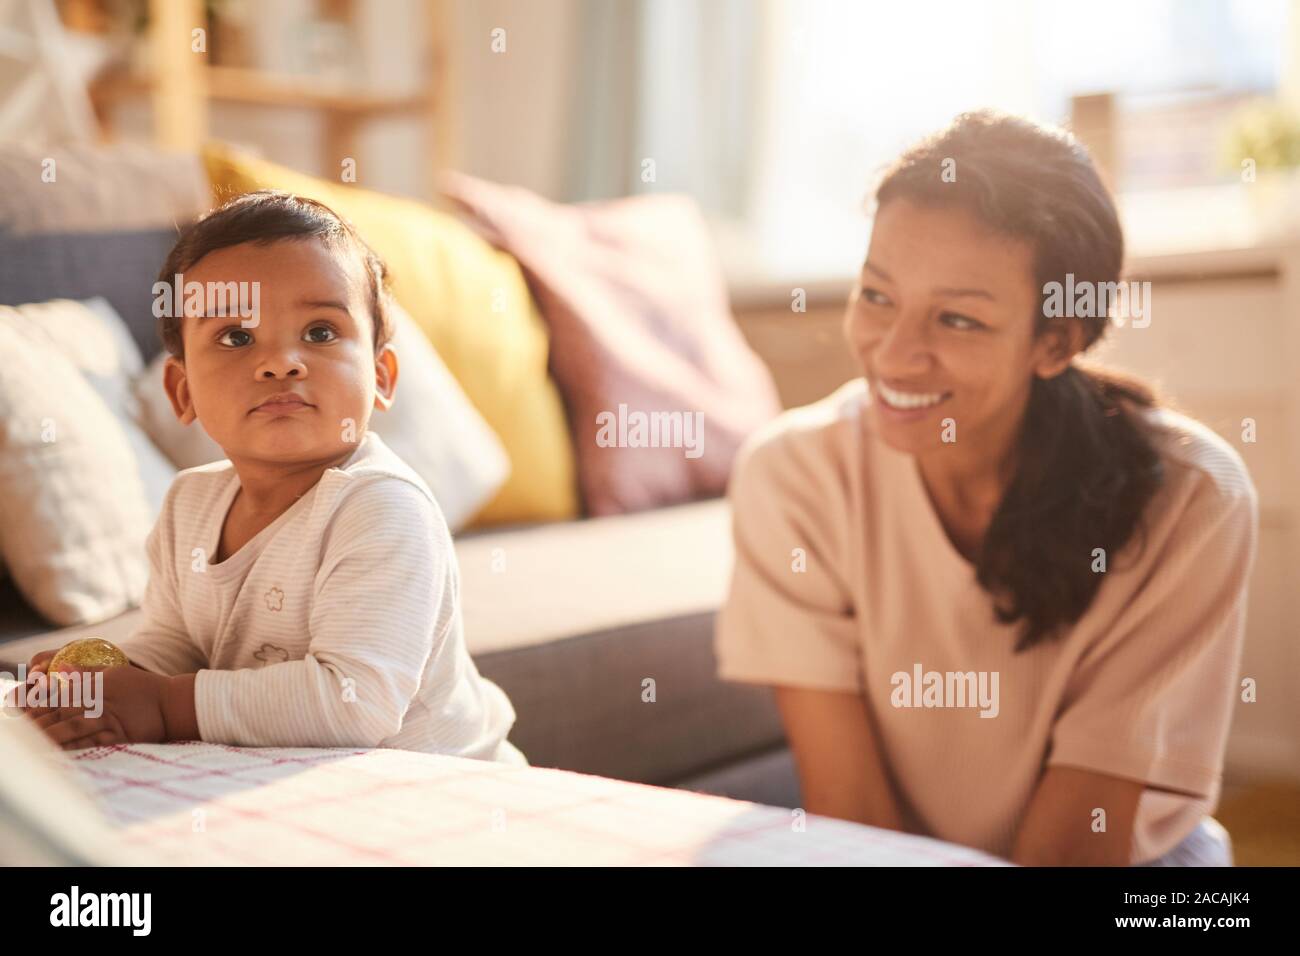 Lächelnde junge Mutter sitzen und spielen mit Ihrem kleinen Kind auf dem Sofa im Zimmer Stockfoto